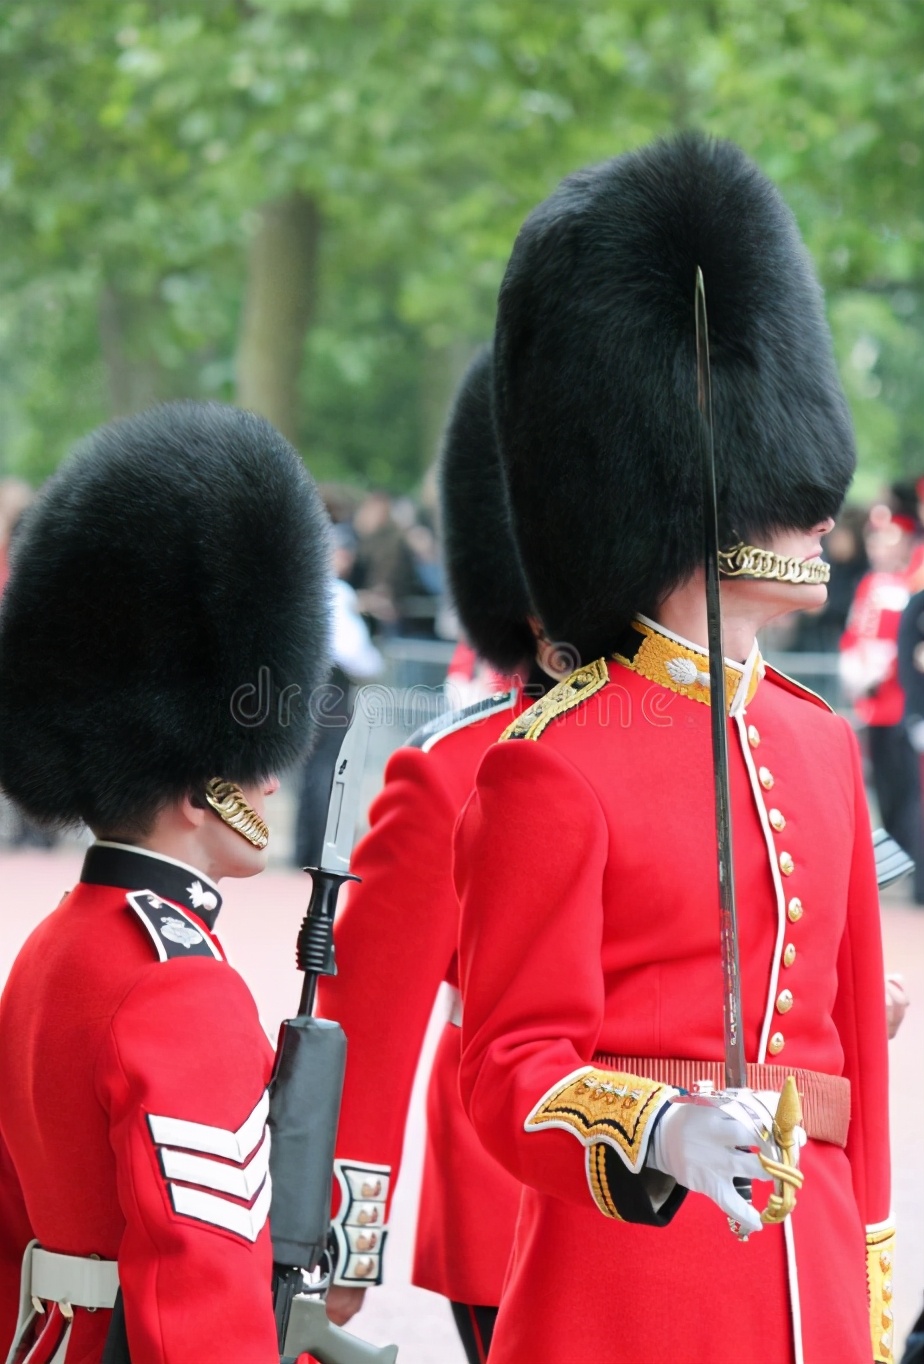 步兵卫队团的红色制服被称为王室常服紧身上衣,卫兵们从四月到十月